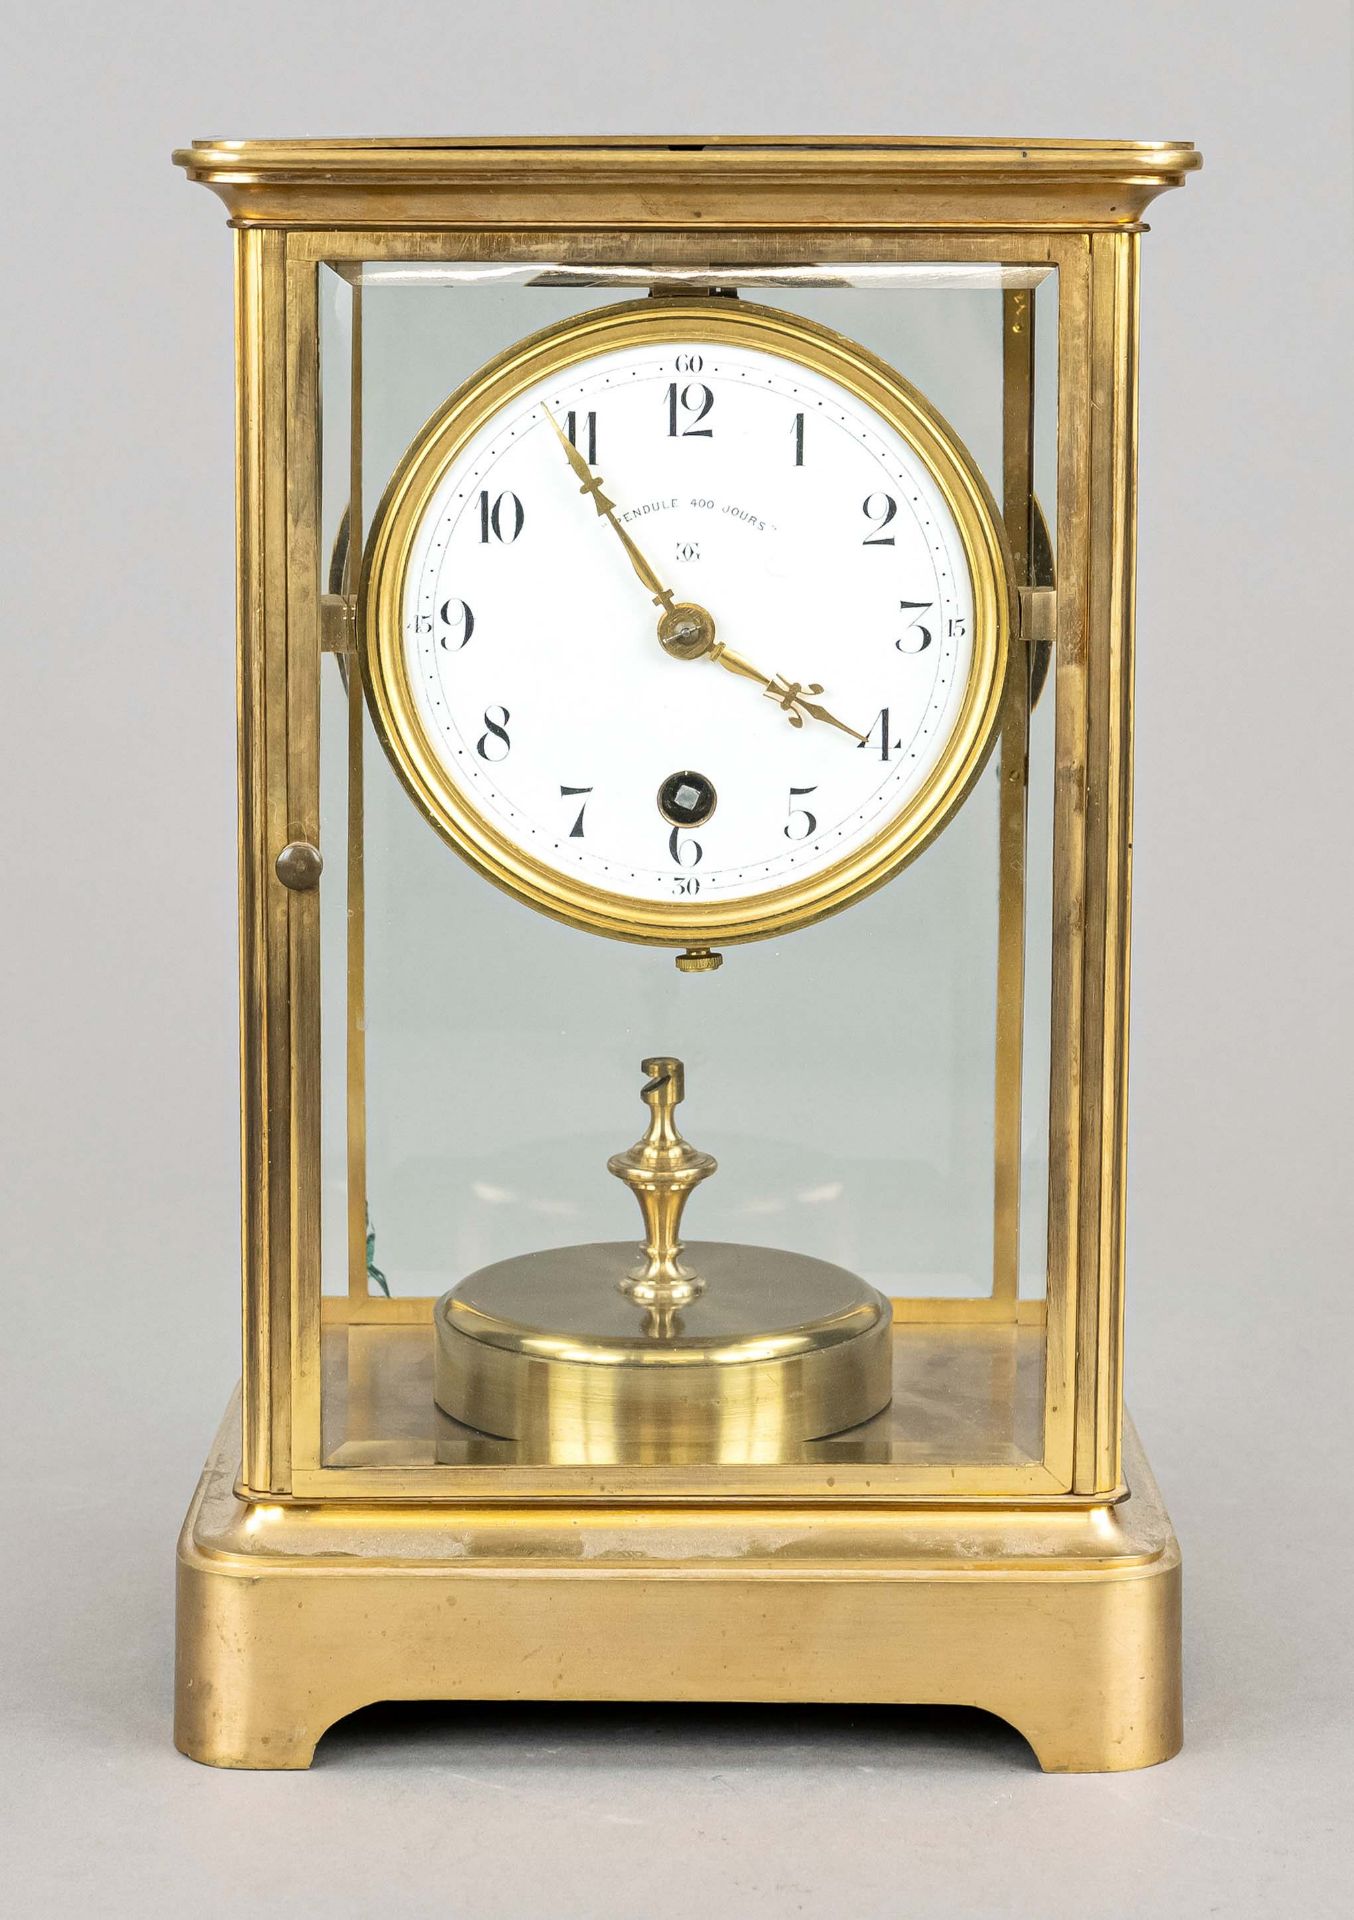 Glass pendulum with torsion pendulum, year clock, Societe des Fabriques de Spiraux reunies, marked